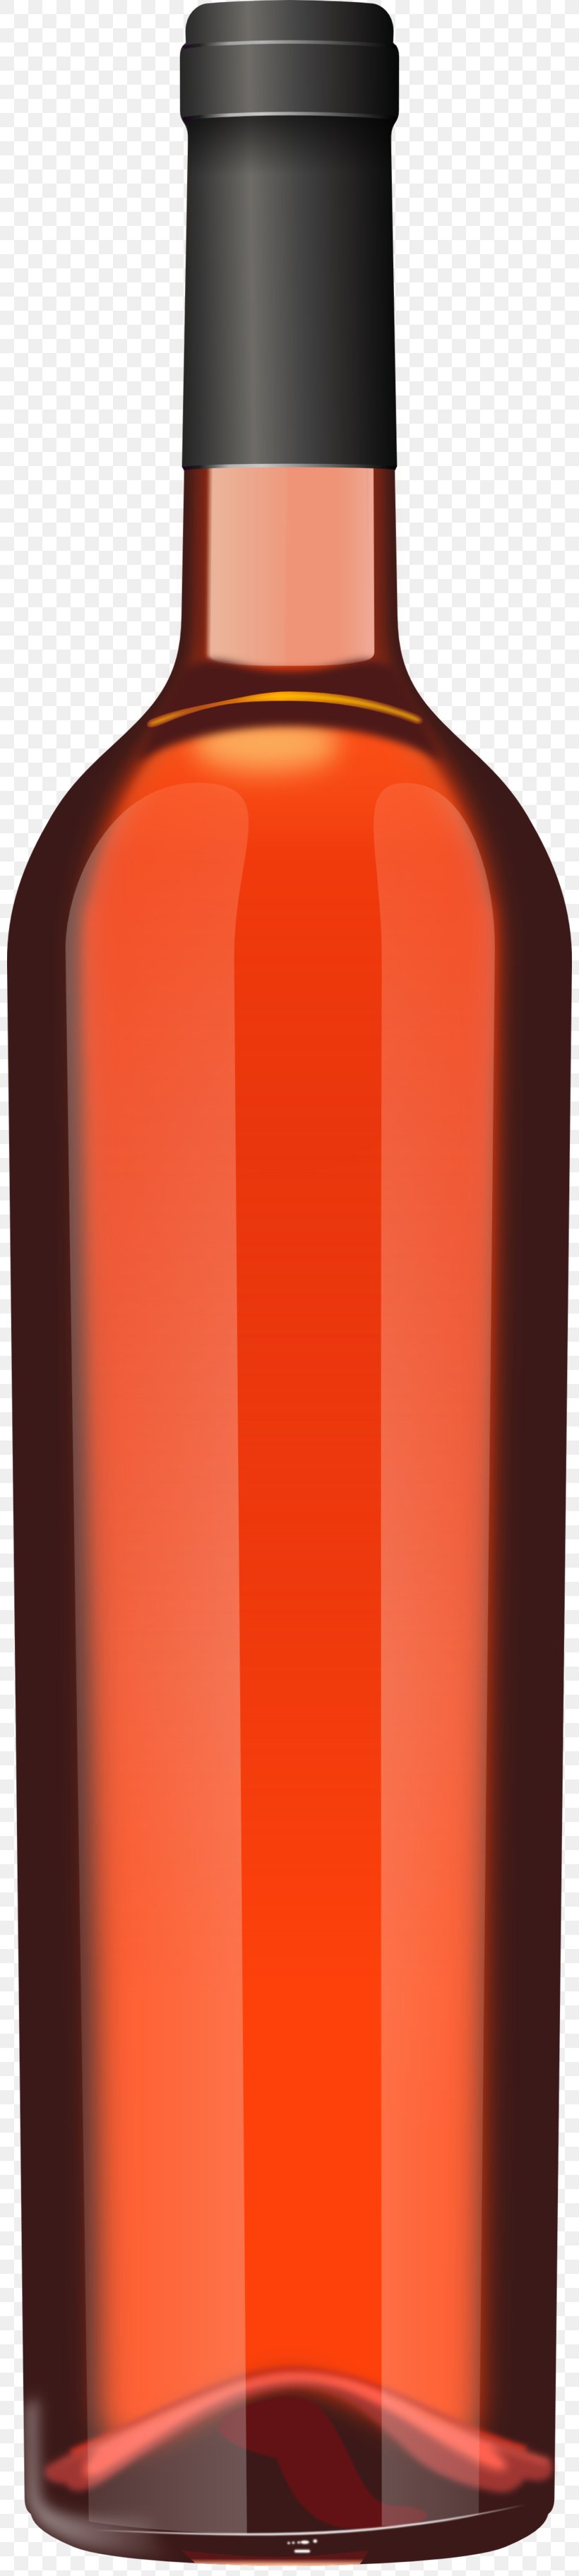 Red Wine Champagne Distilled Beverage Beer, PNG, 800x3648px, Red Wine, Alcoholic Beverage, Alcoholic Drink, Beer, Bottle Download Free